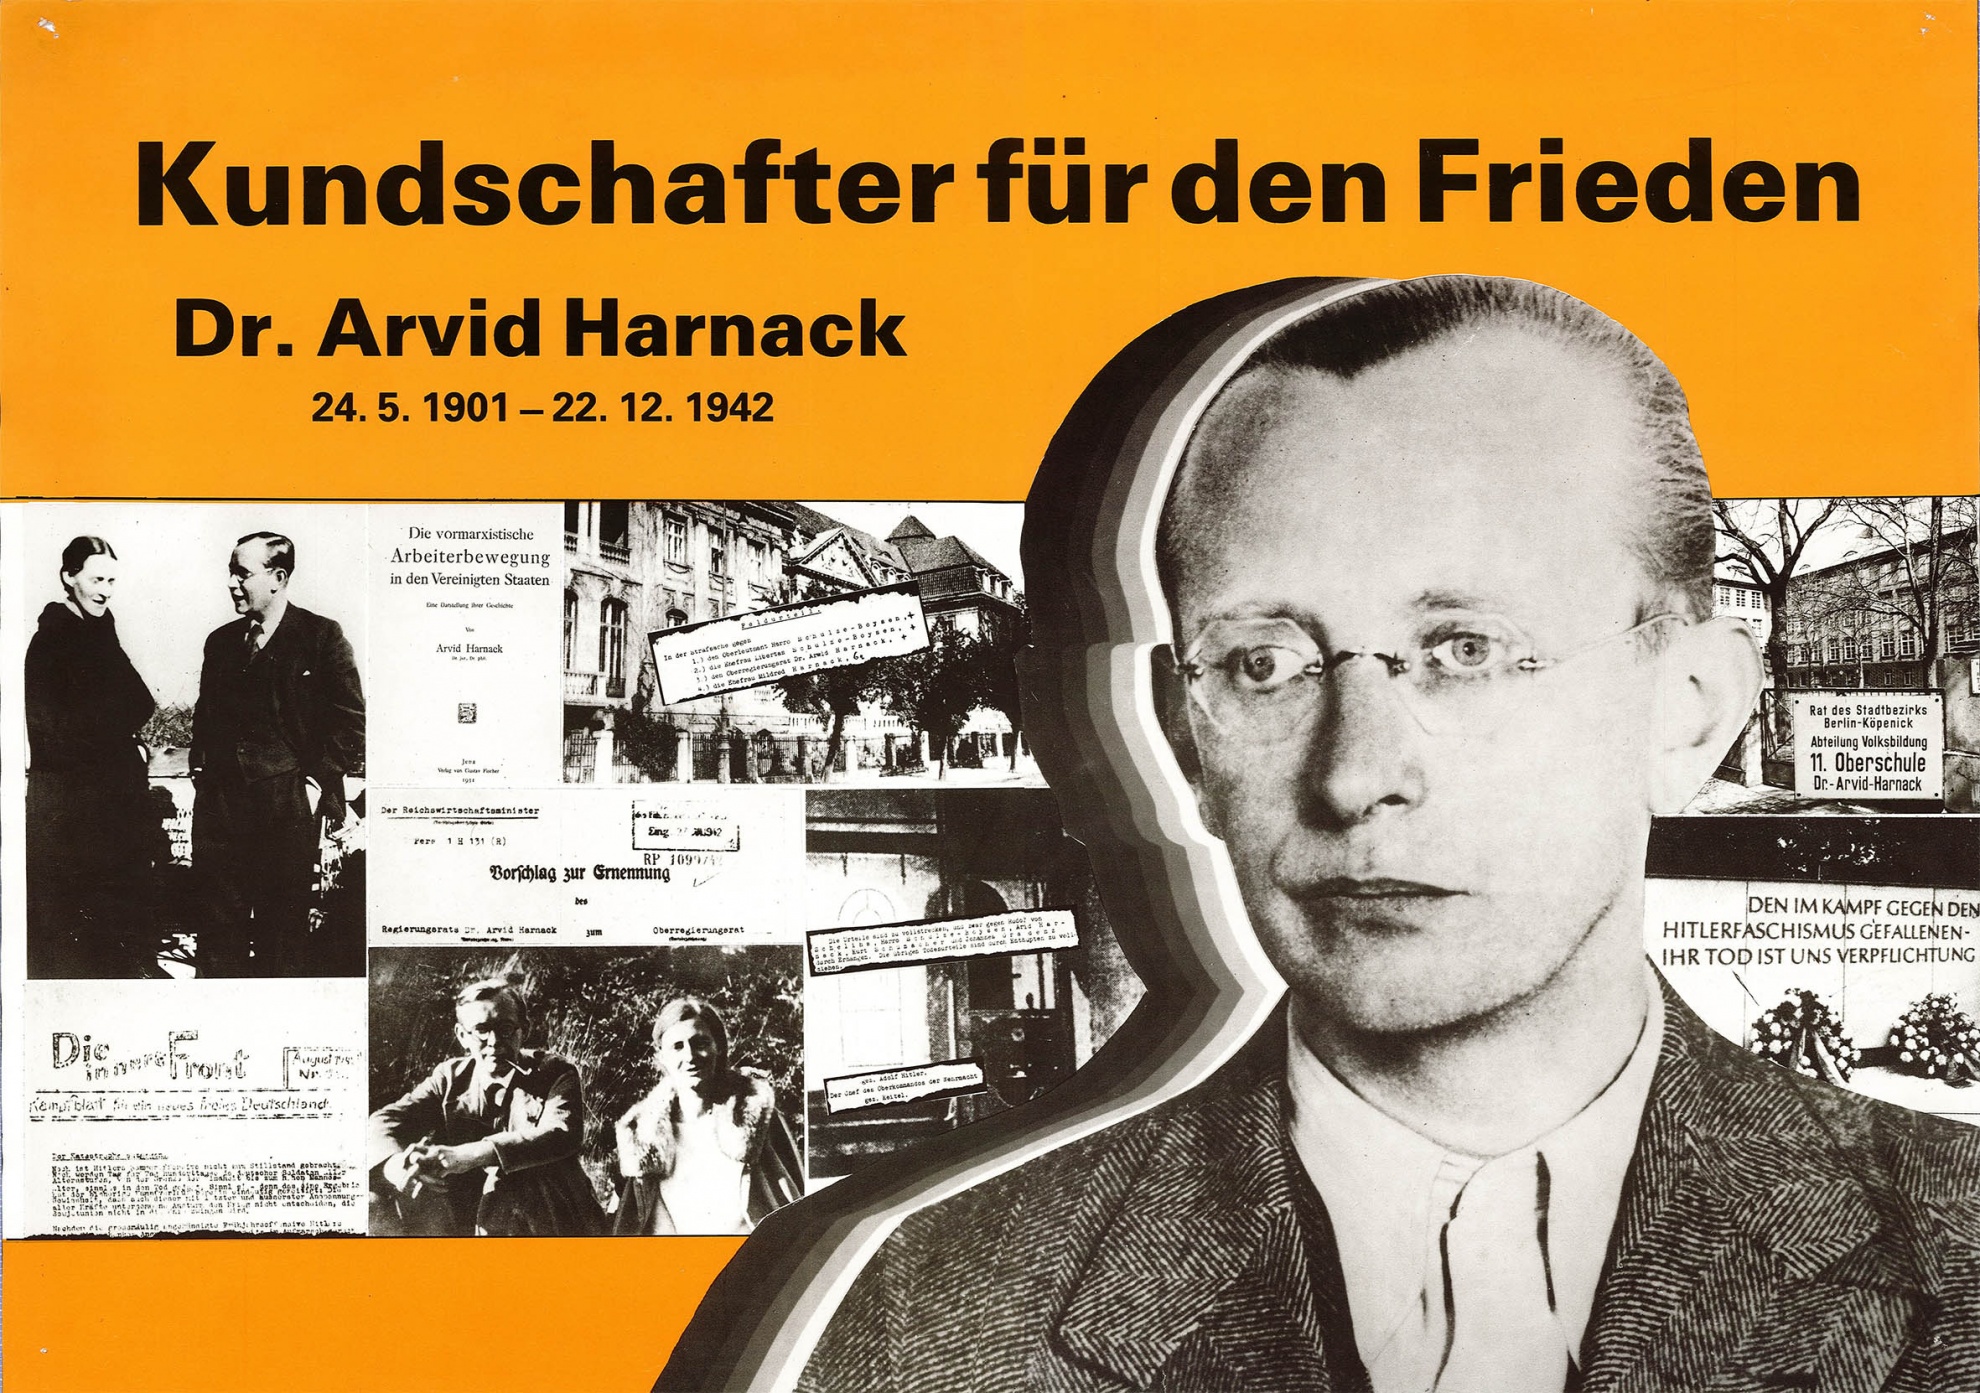 Kundschafter für den Frieden - Dr. Arvid Harnack. (Museum Wolmirstedt RR-F)